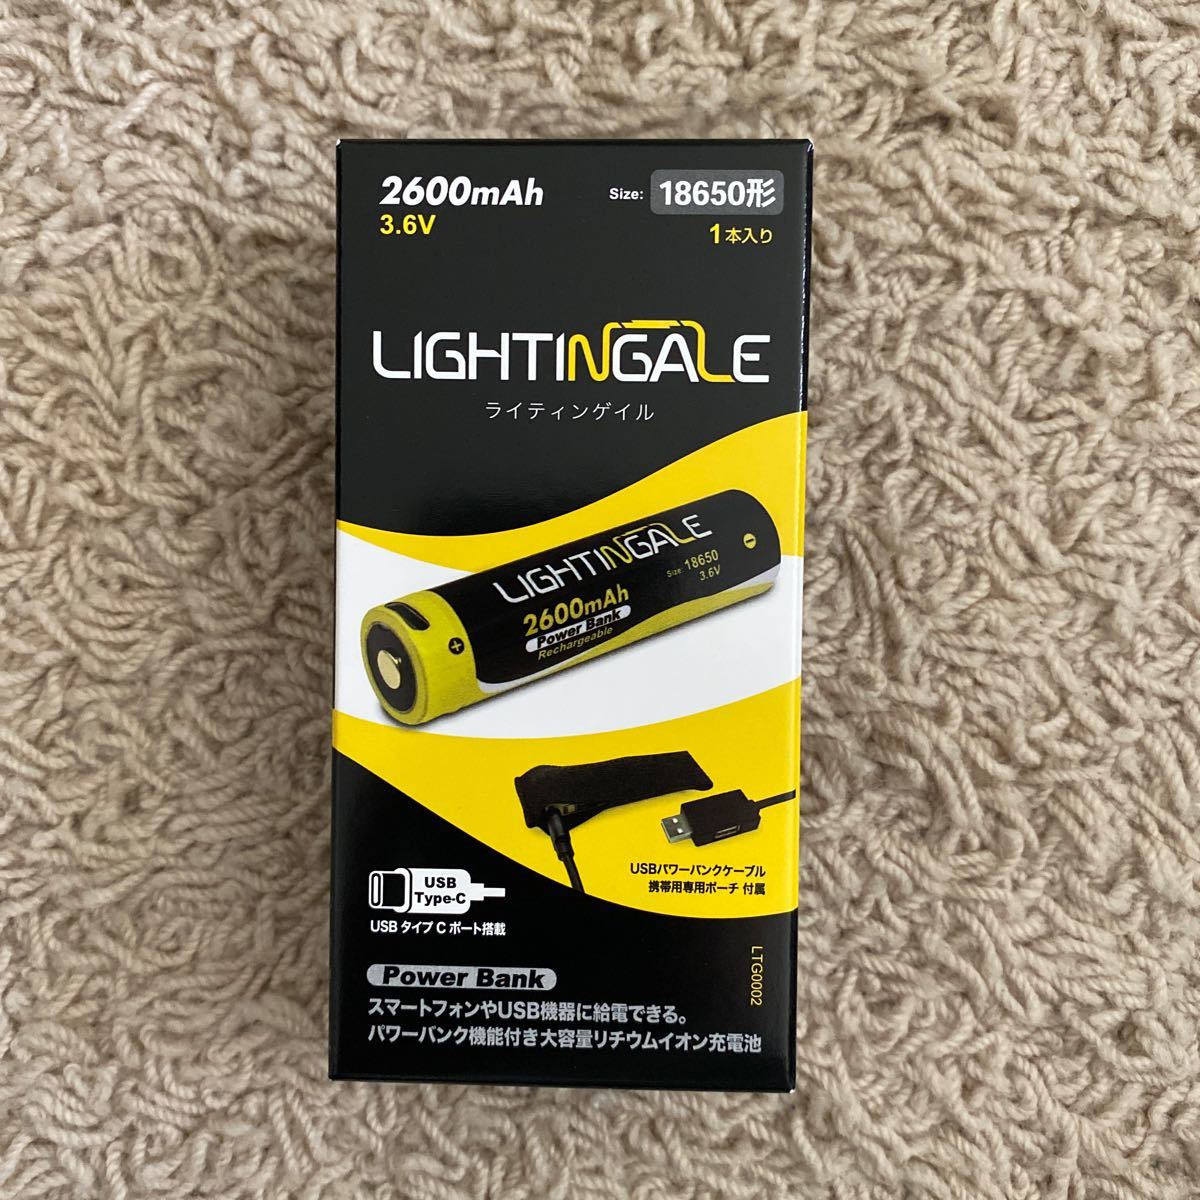 スマホ等にも給電できる充電池付LEDフラッシュライト LTG1001、リチウムイオン充電池2600mA/USB-TYPE-C